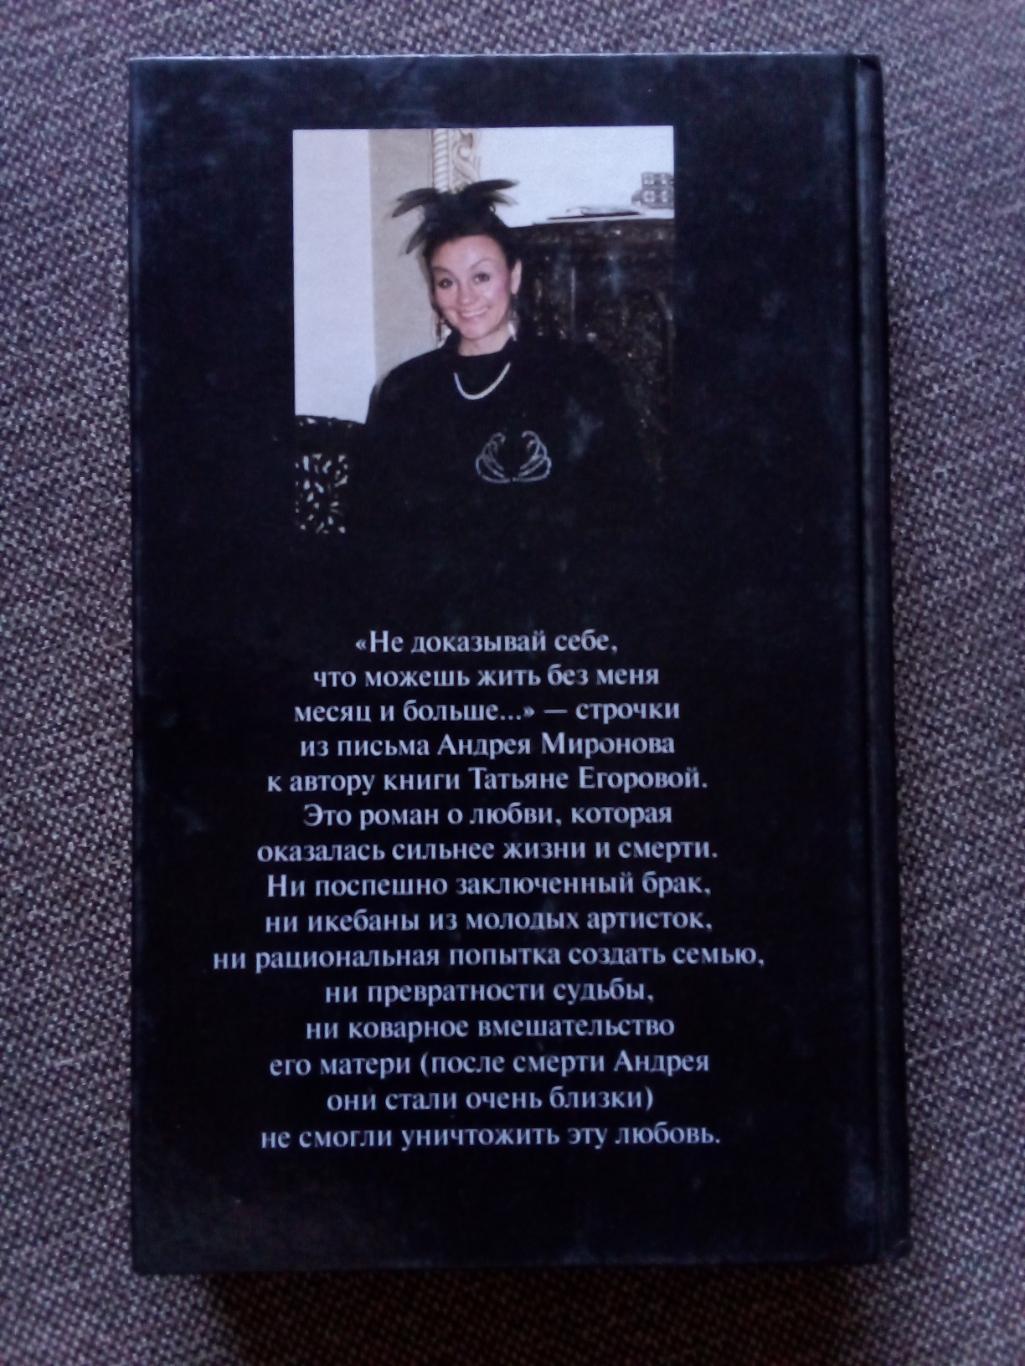 Т. Егорова - Андрей Миронов и я (Любовная драма жизни) 2000 г. (Артисты СССР) 1